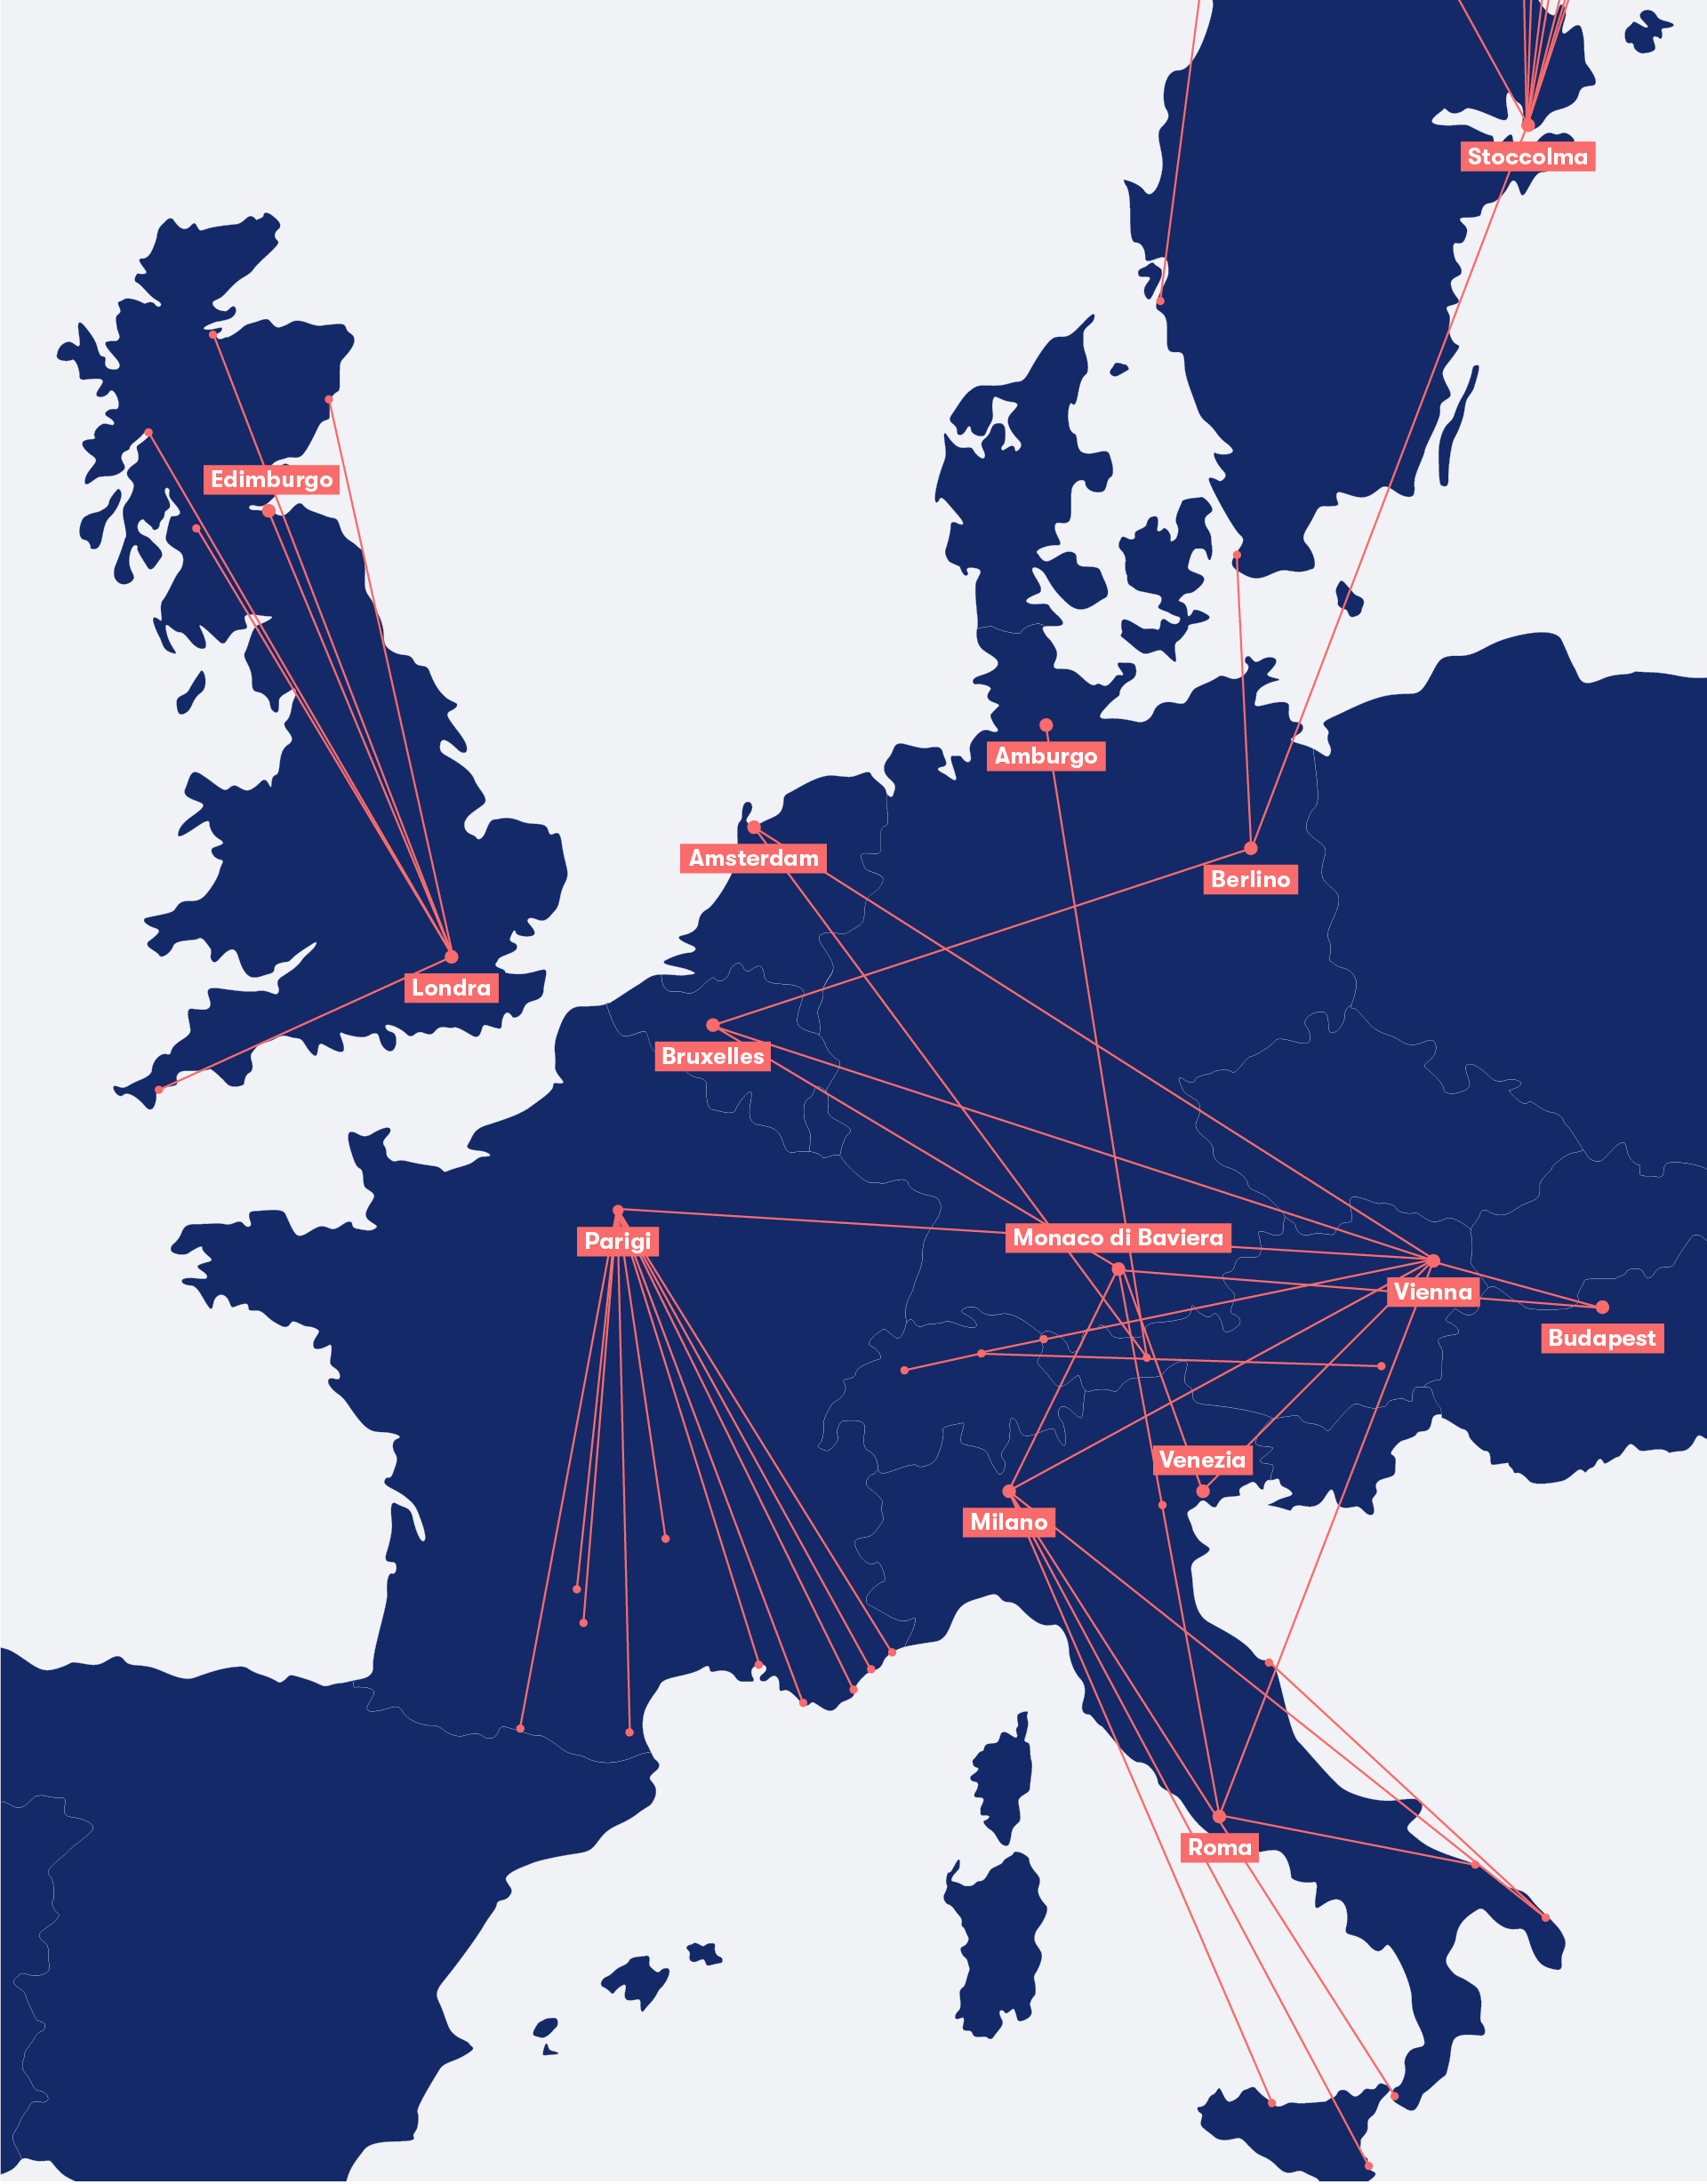 Mappa dei treni notturni più popolari in Europa